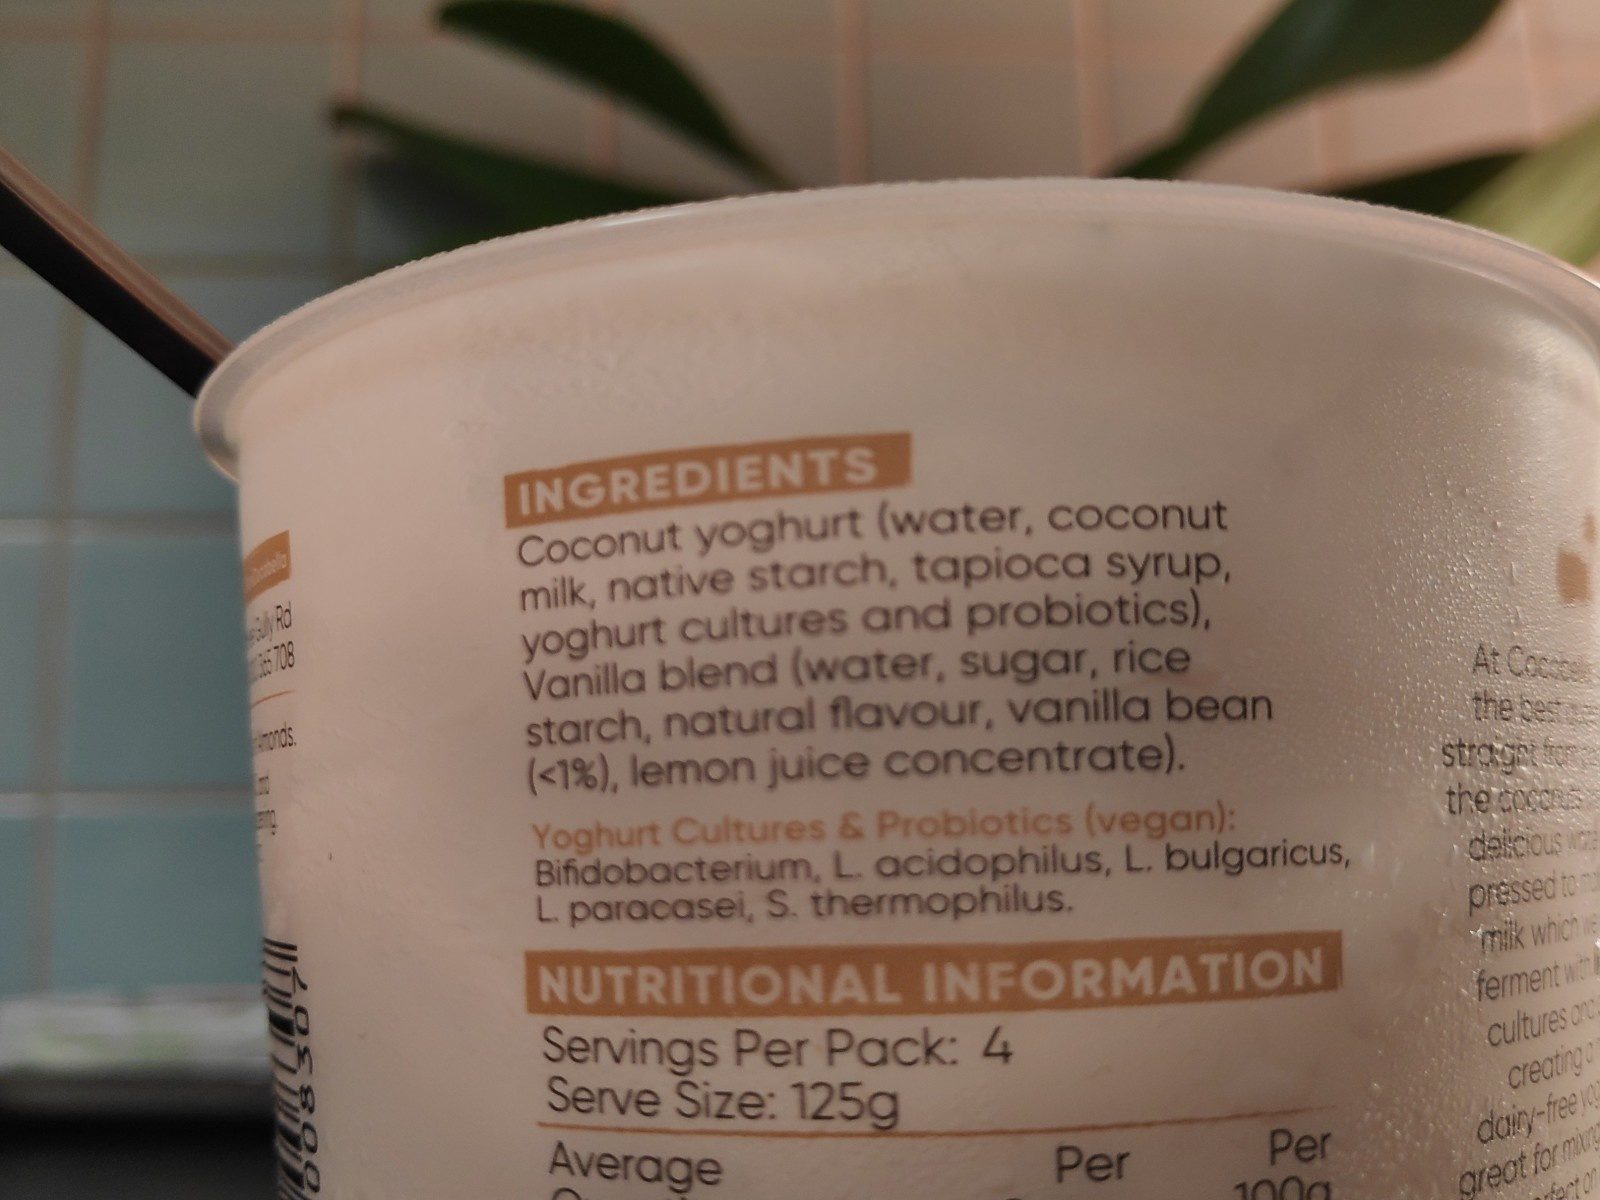 Coconut yoghurt dairy free - Ingredients - fr